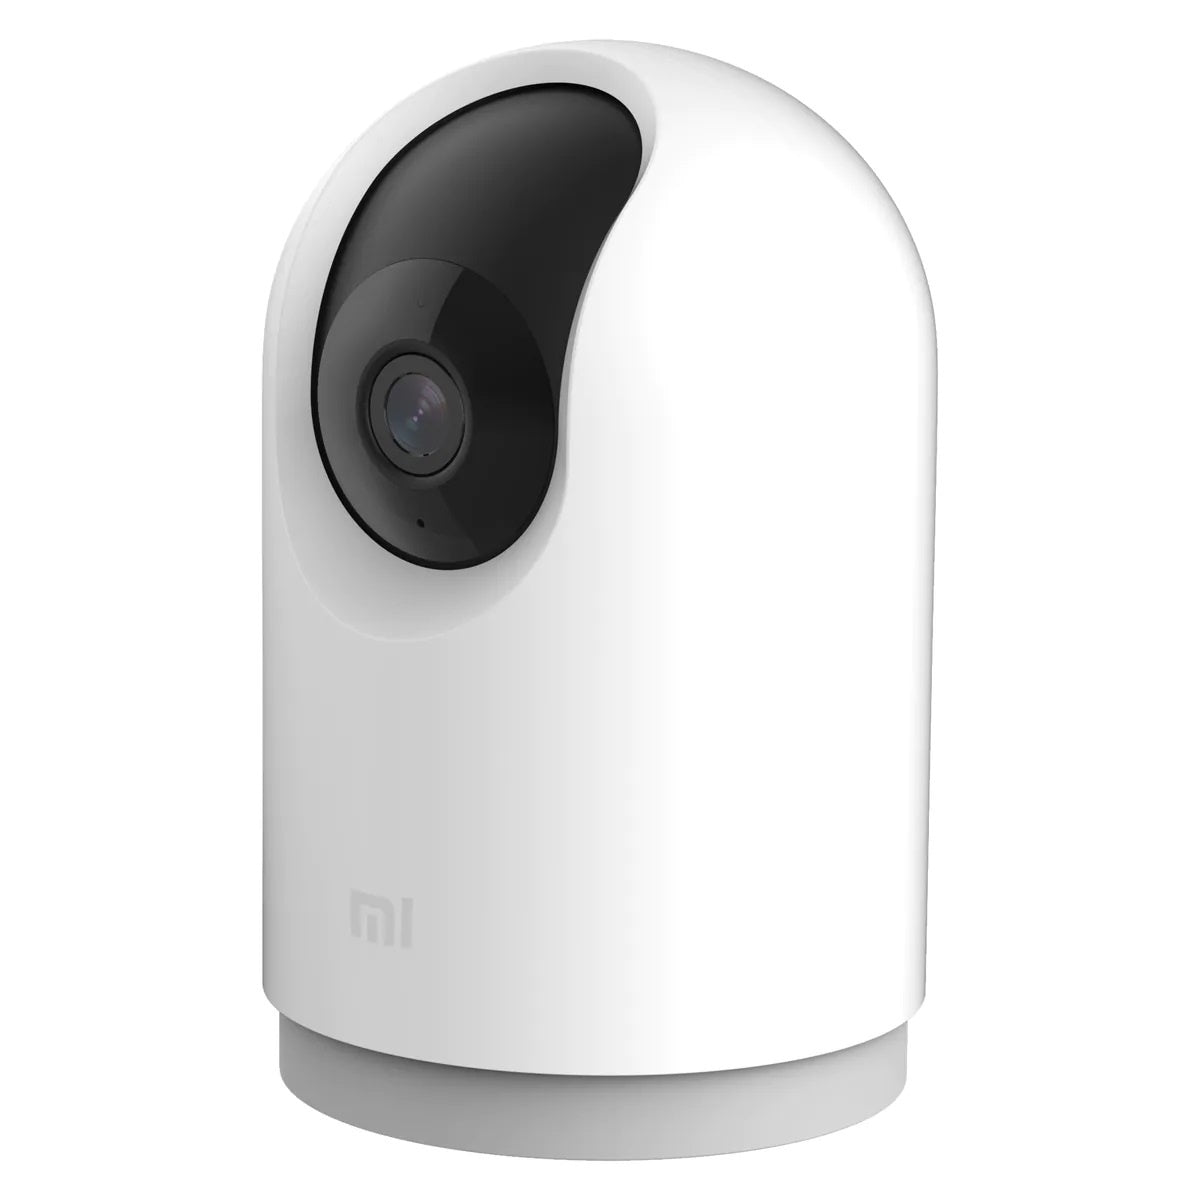 Mi 360° Home Security Camera 2K Pro